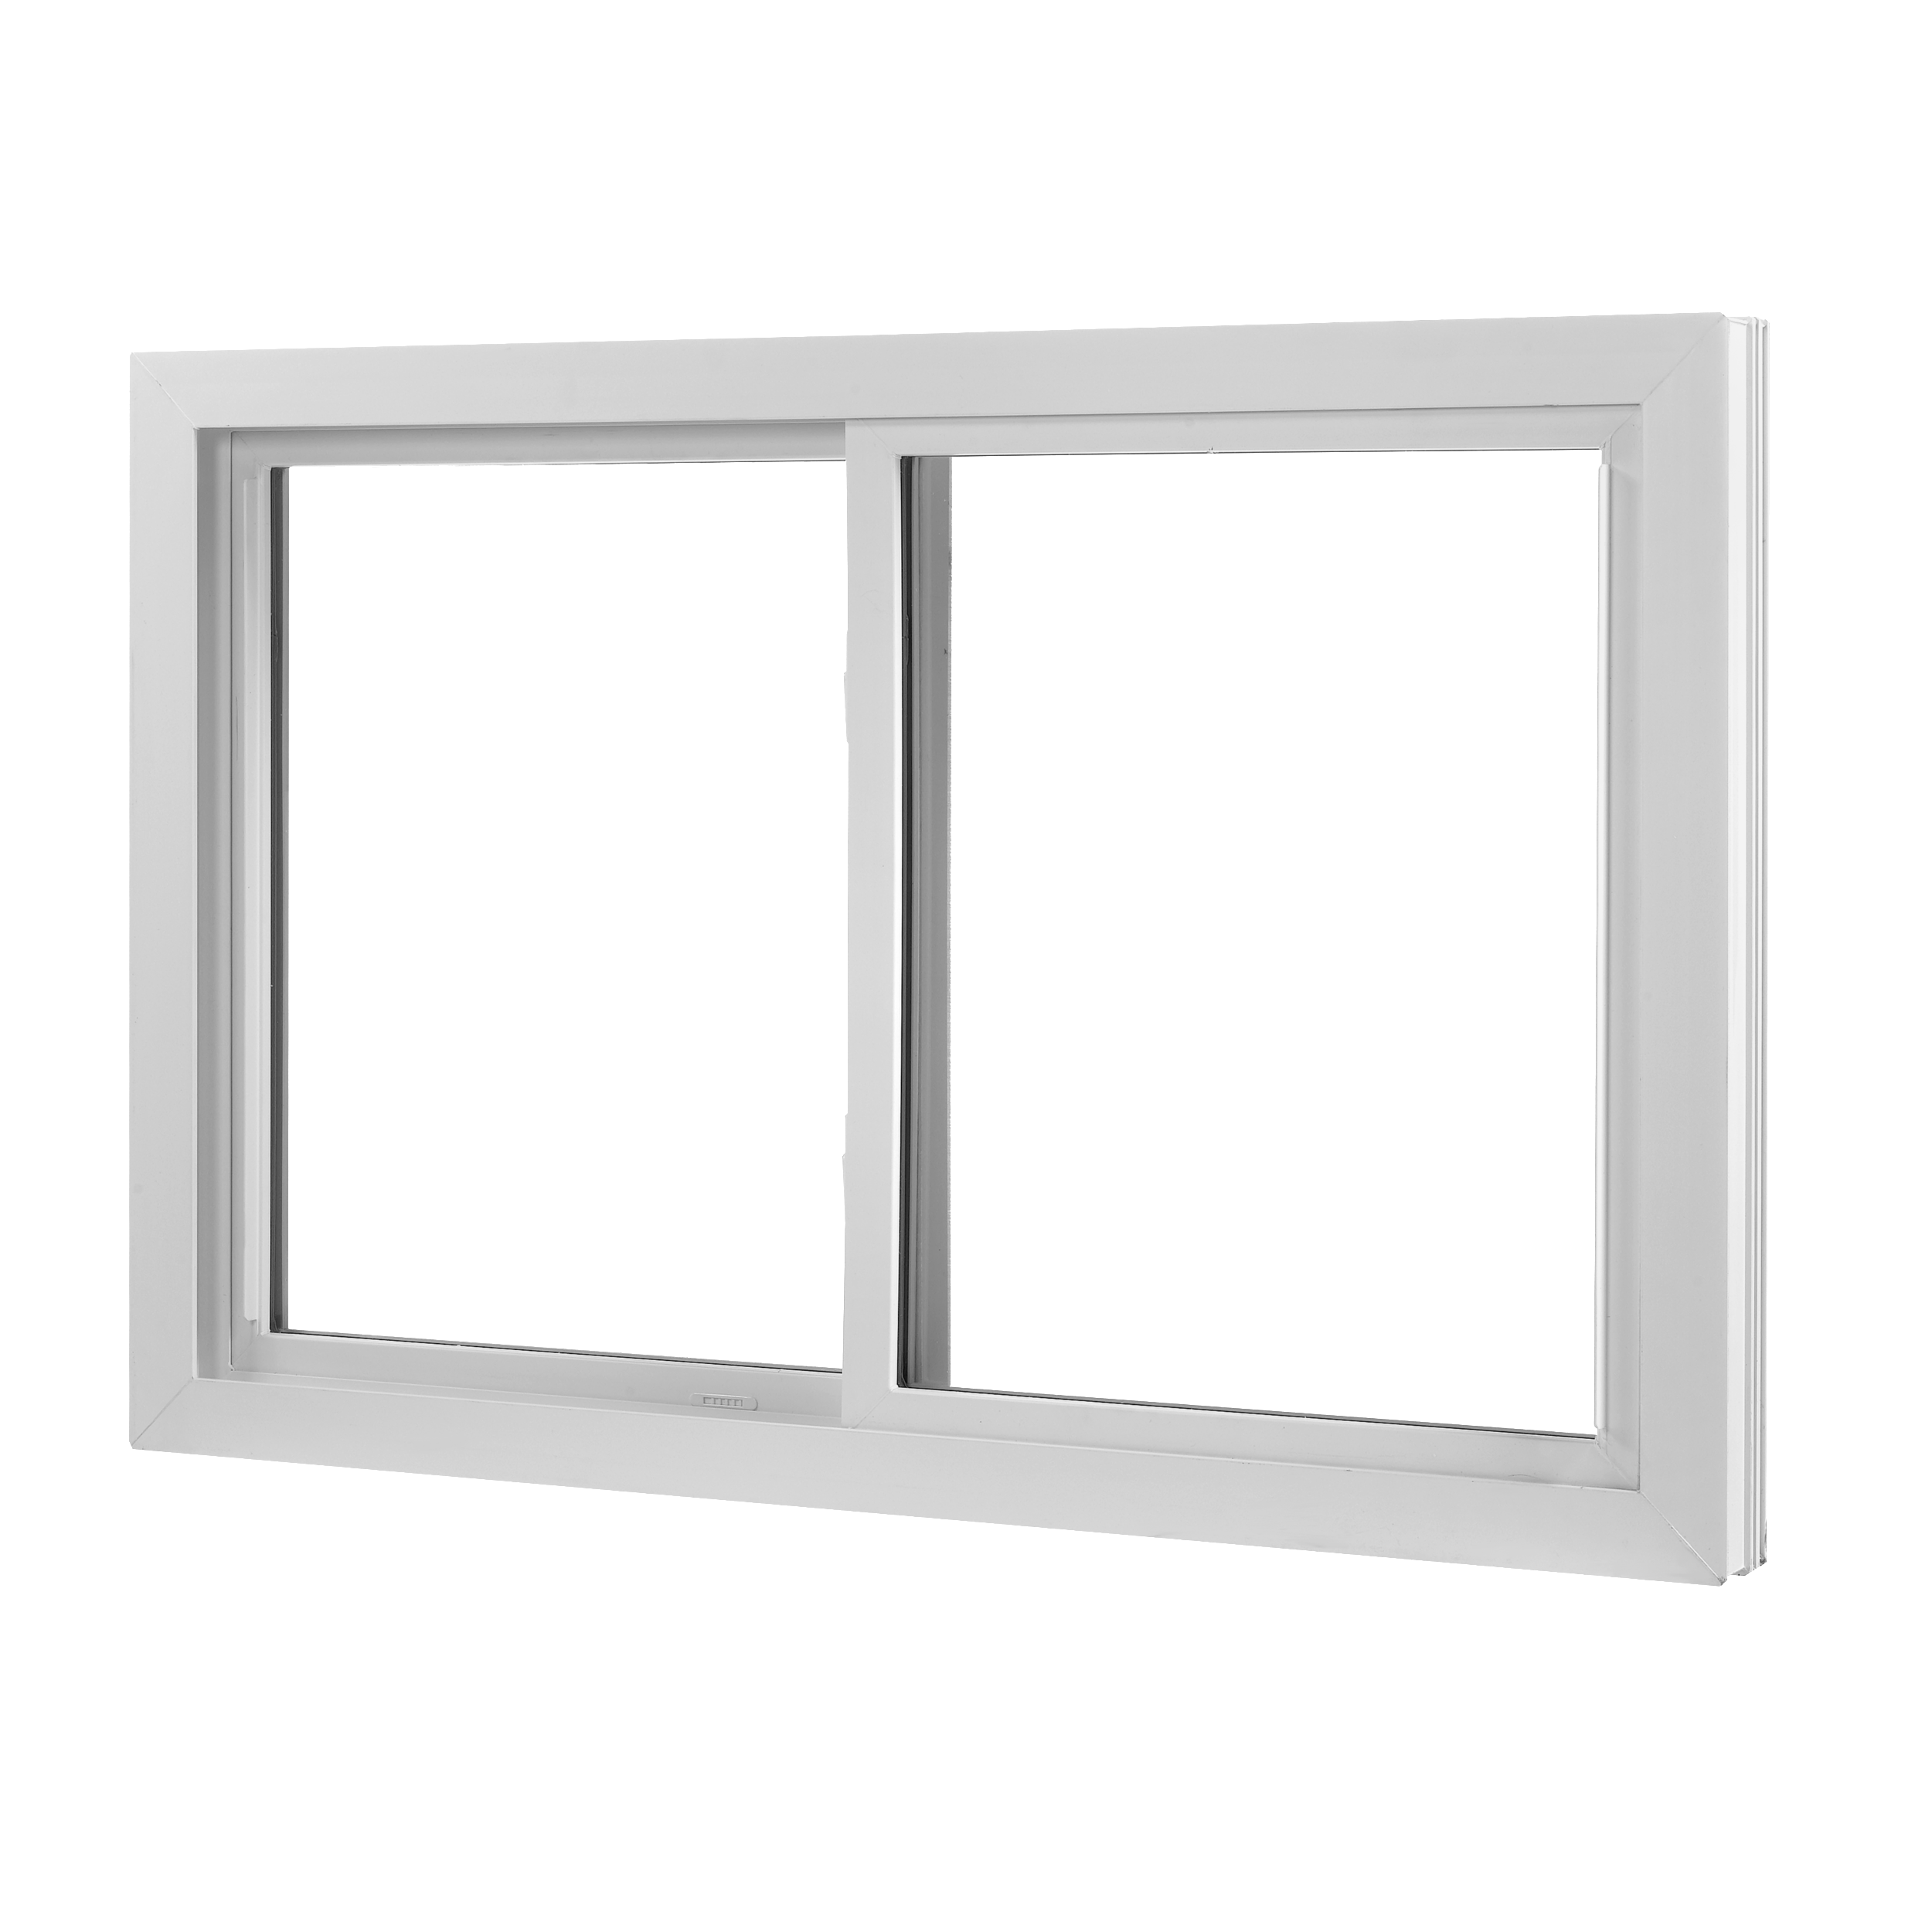 Wallside Windows Double Sliding Window (Copy)